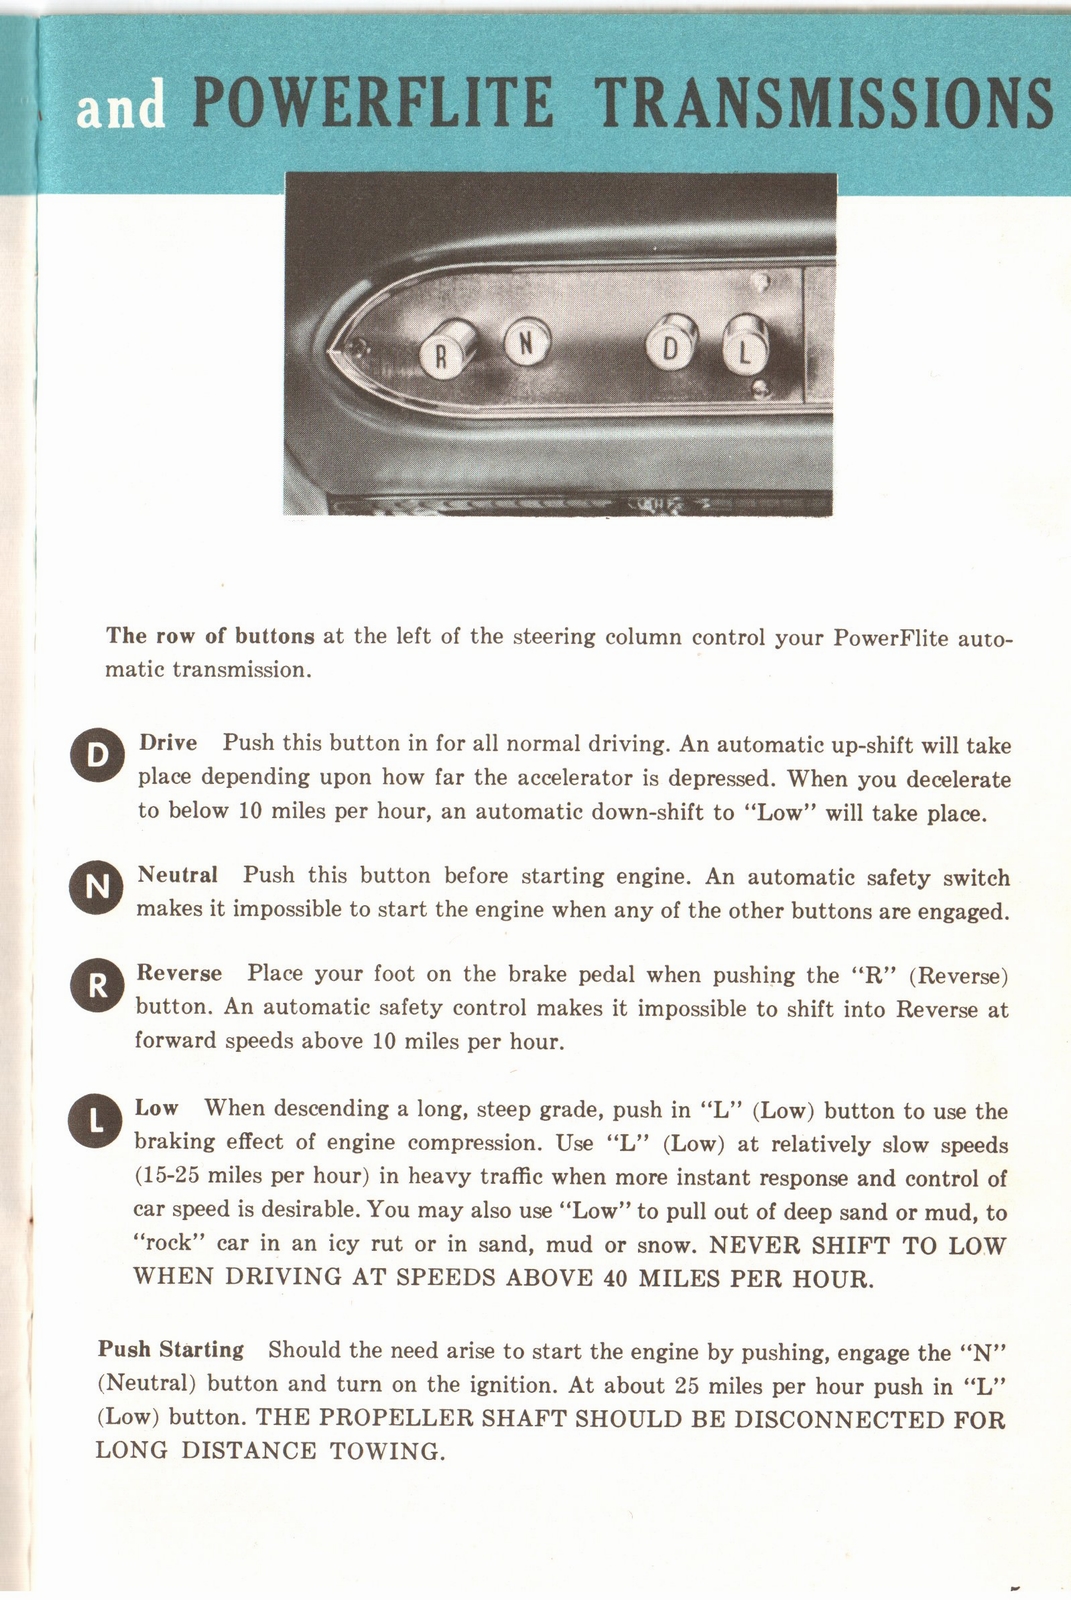 n_1960 Plymouth Owners Manual-05.jpg